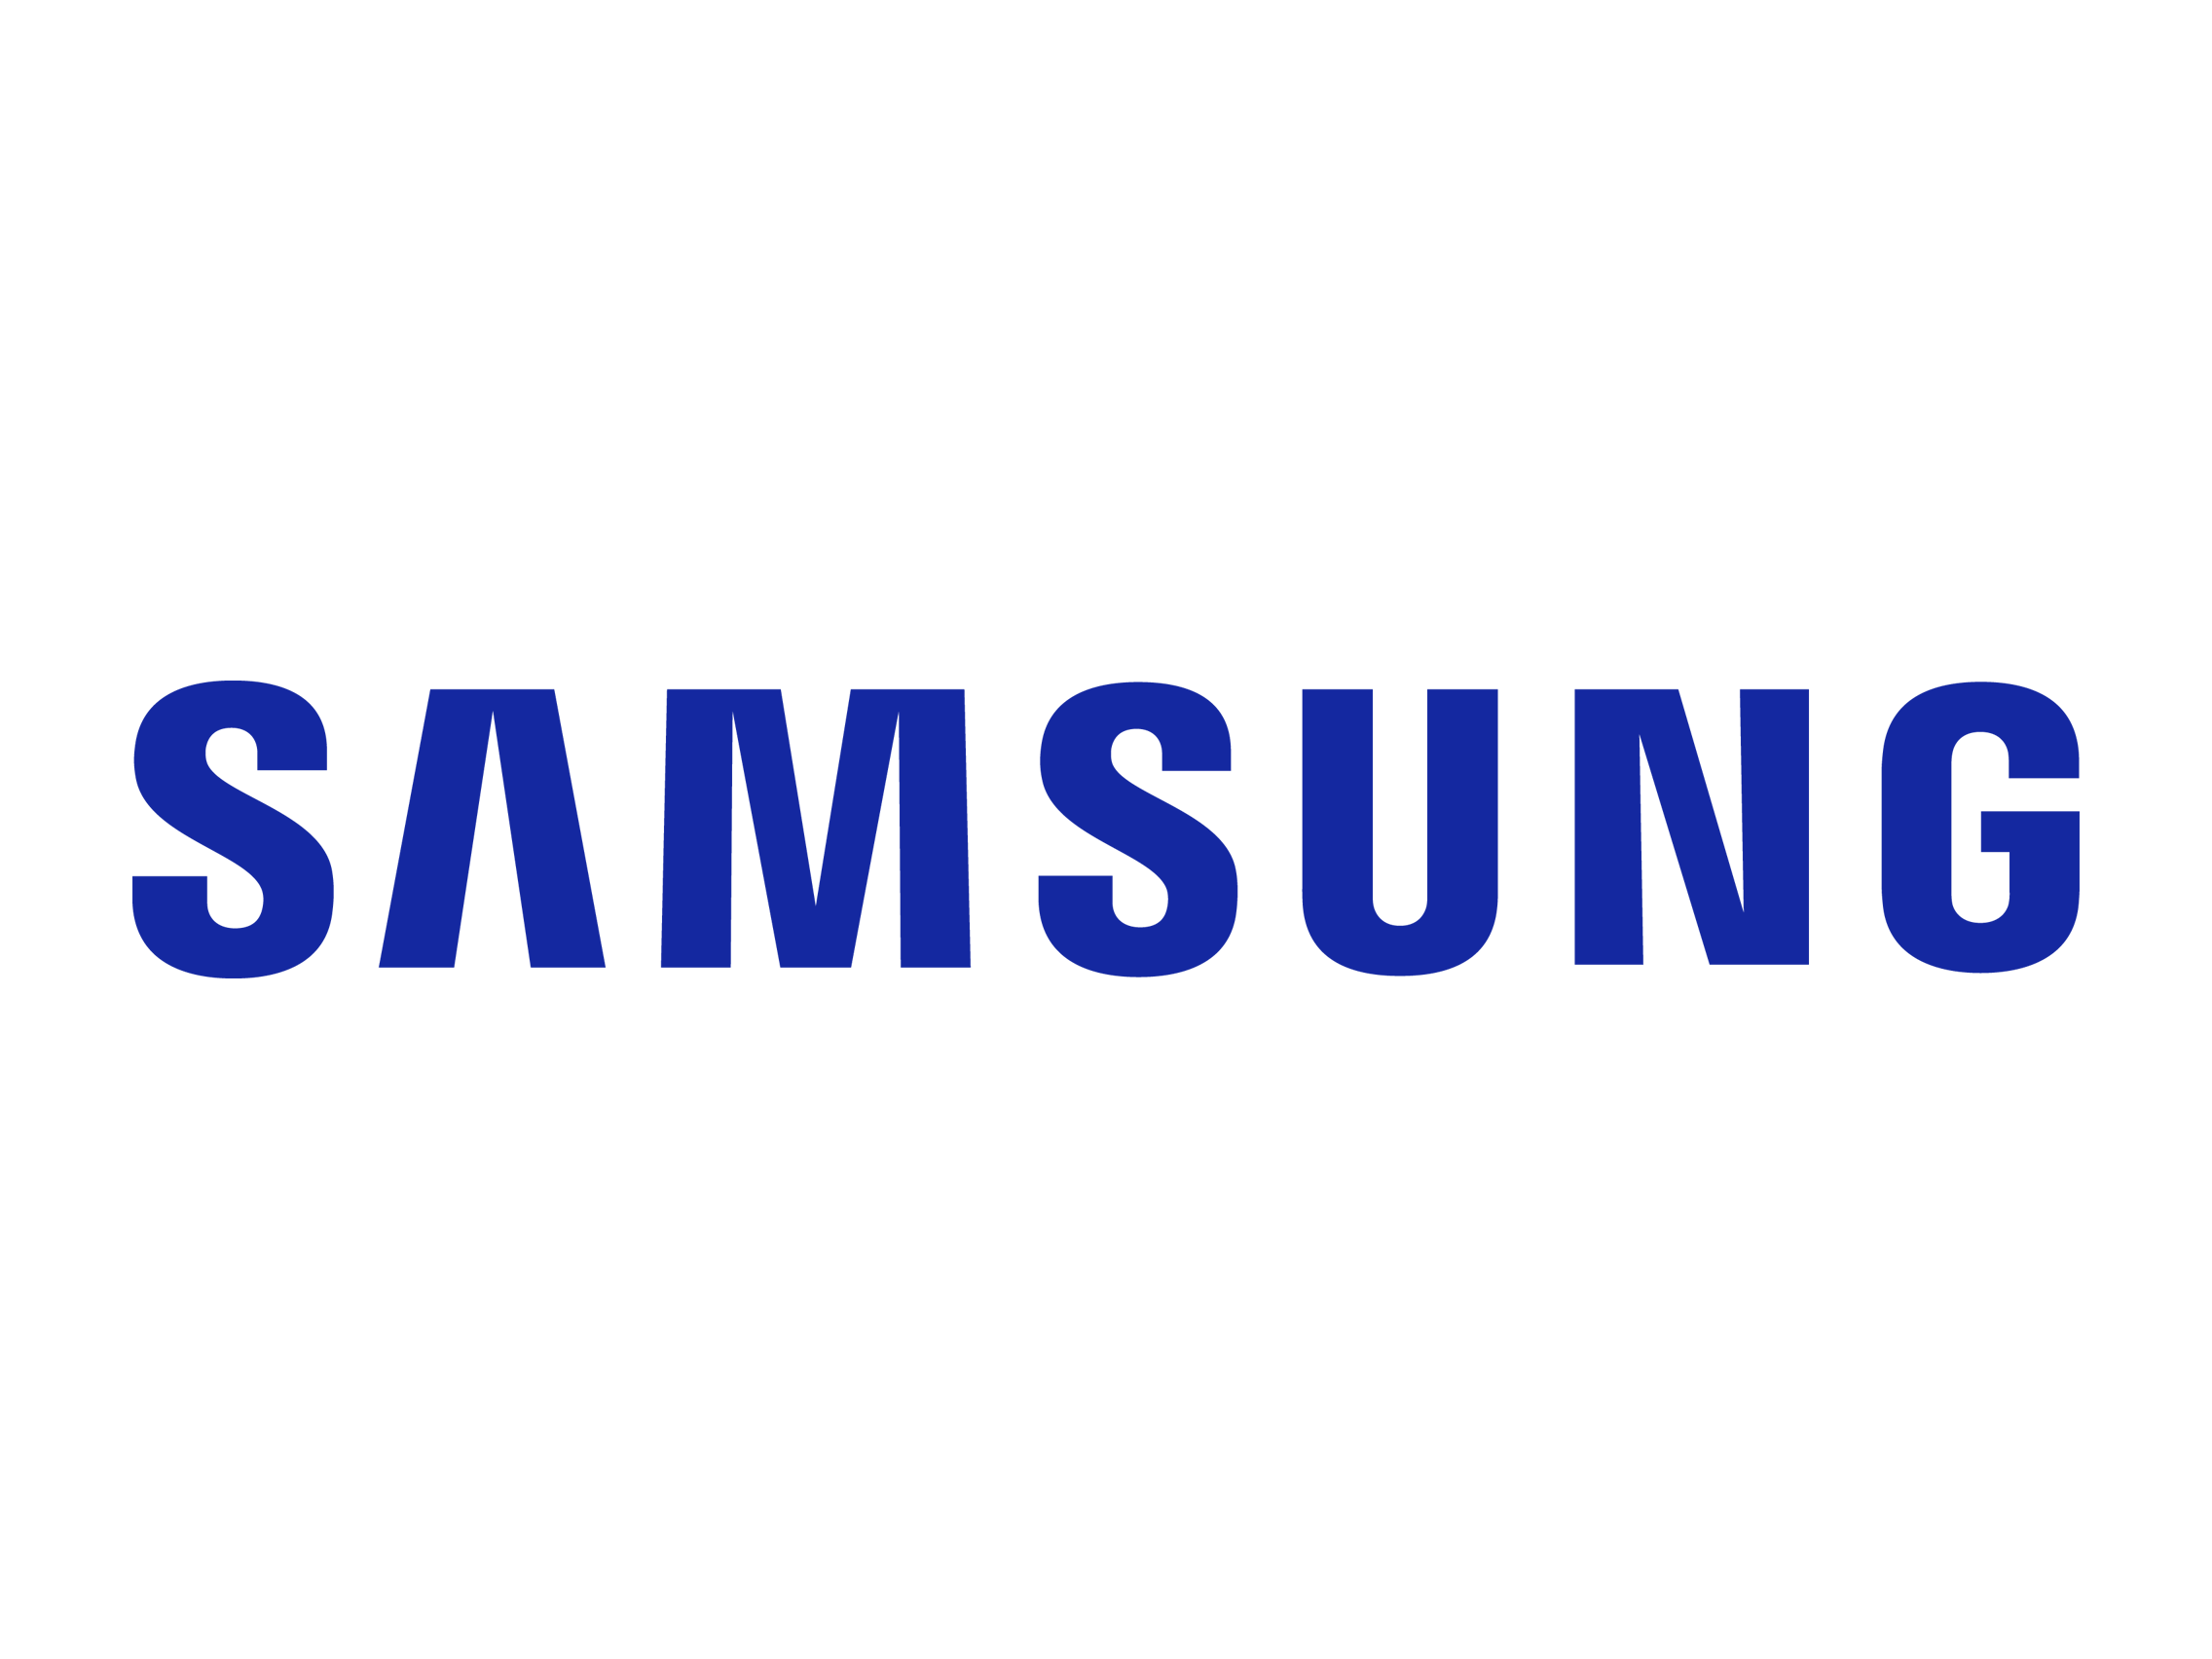 samsung mobile logo vector